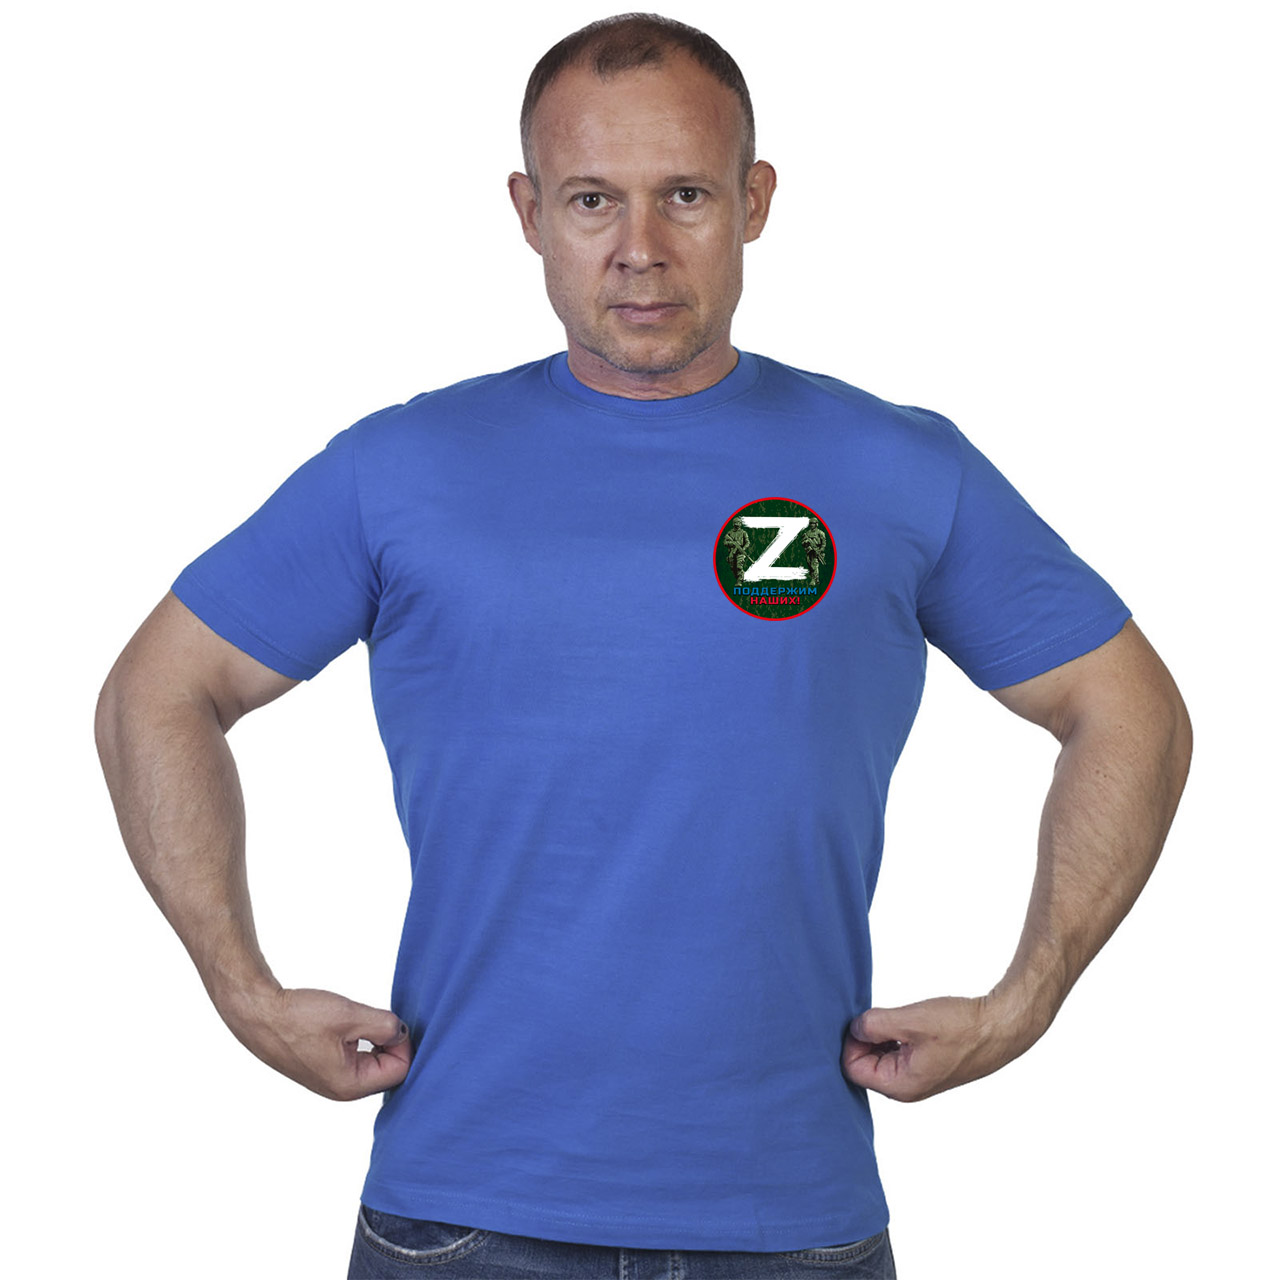 Васильковая футболка с трансфером «Z» – поддержим наших!